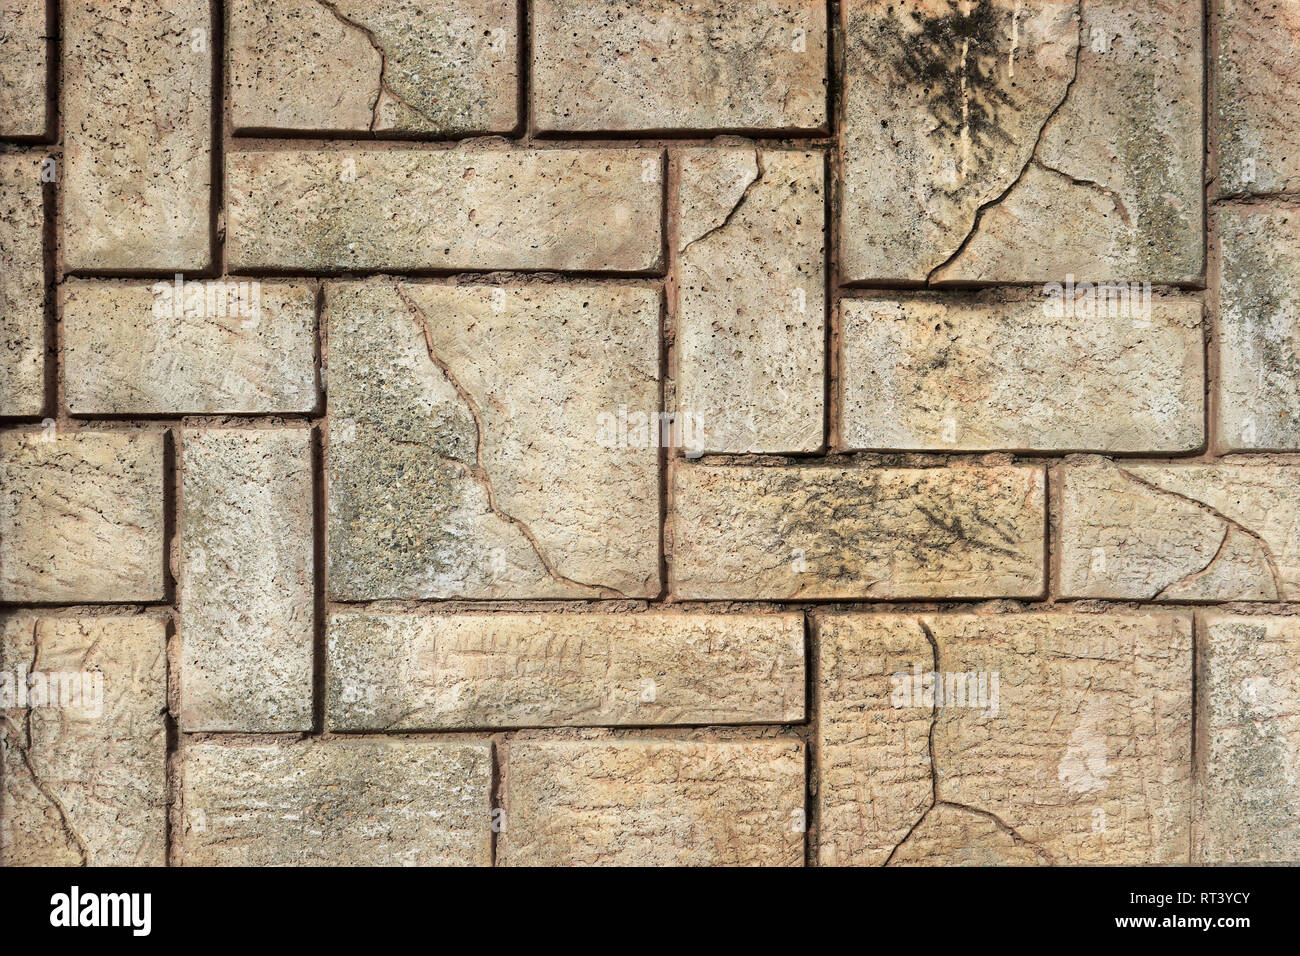 Muro de revestimiento de piedra fotografías e imágenes alta resolución - Alamy